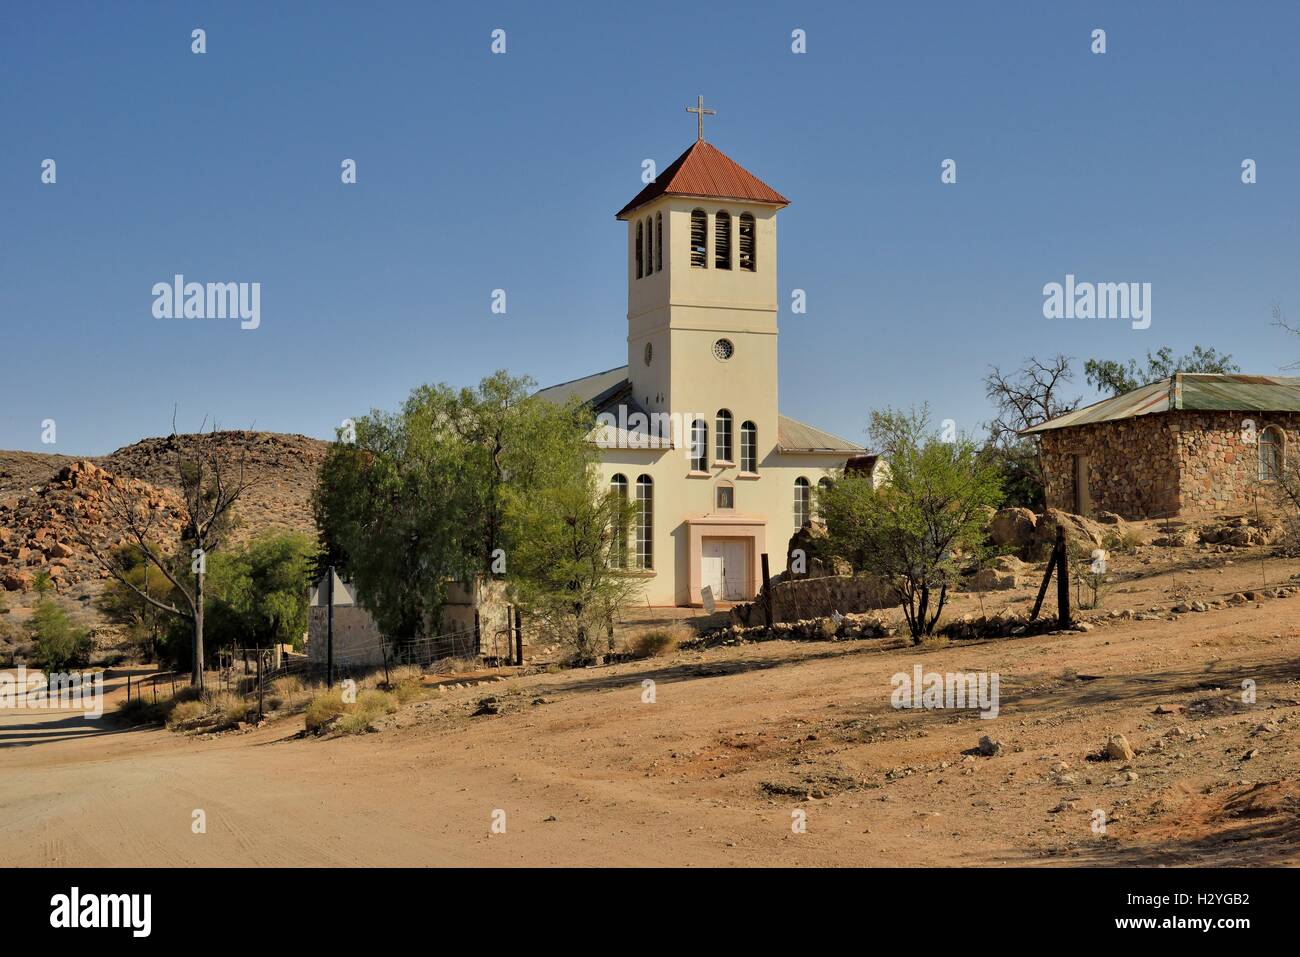 Church of Aus, Karas Region, Namibia Stock Photo